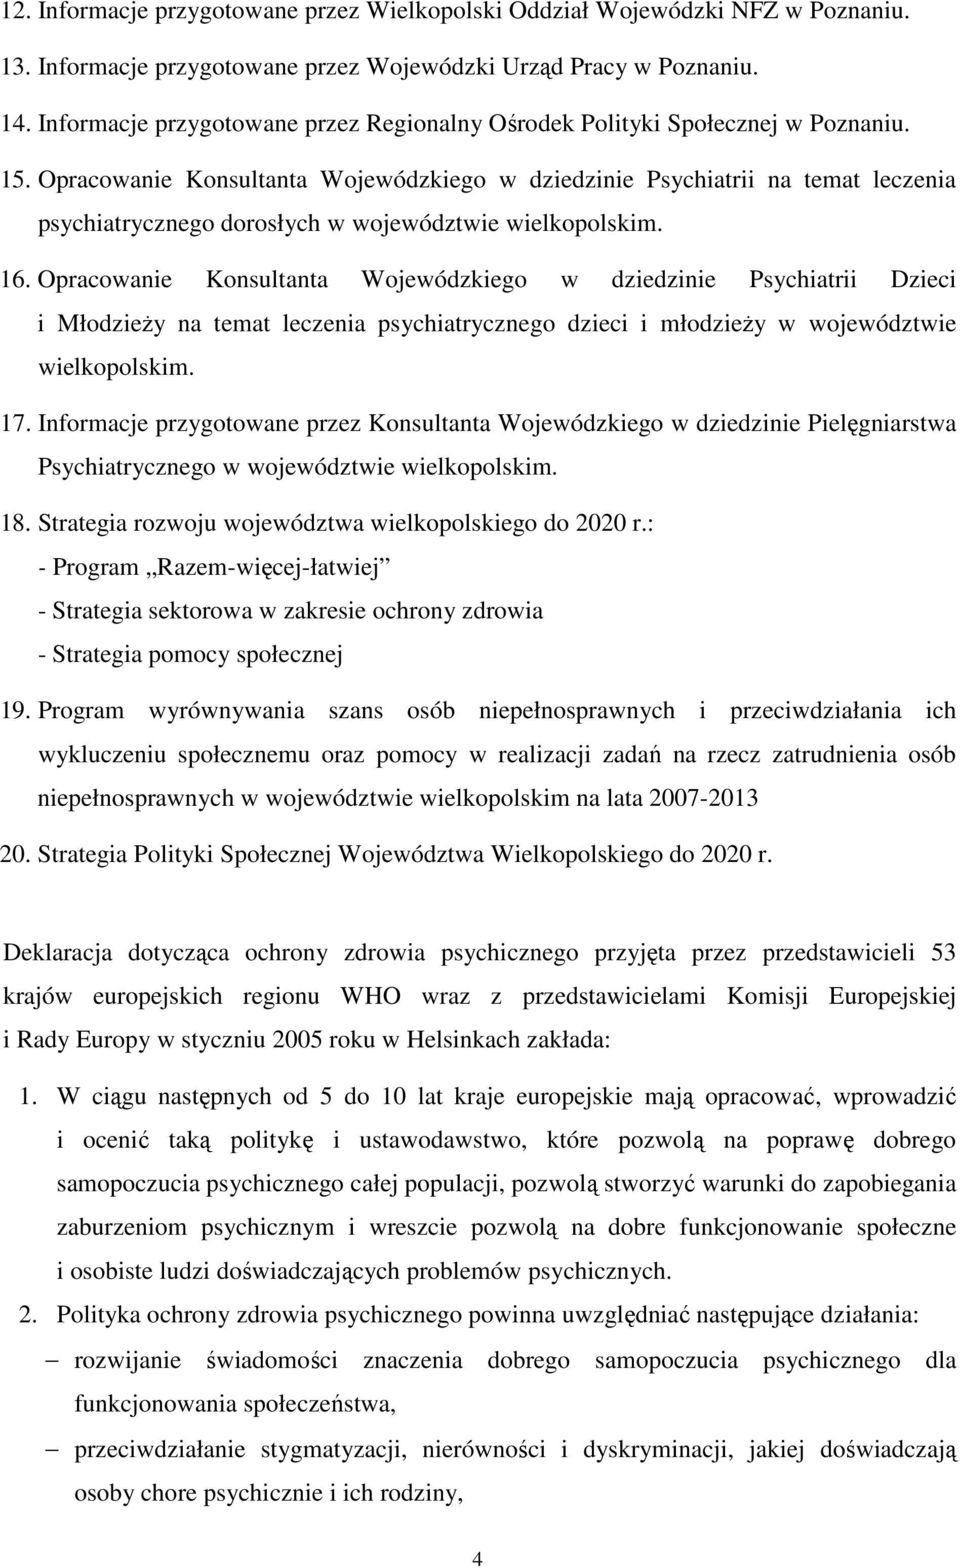 Opracowanie Konsultanta Wojewódzkiego w dziedzinie Psychiatrii na temat leczenia psychiatrycznego dorosłych w województwie wielkopolskim. 16.